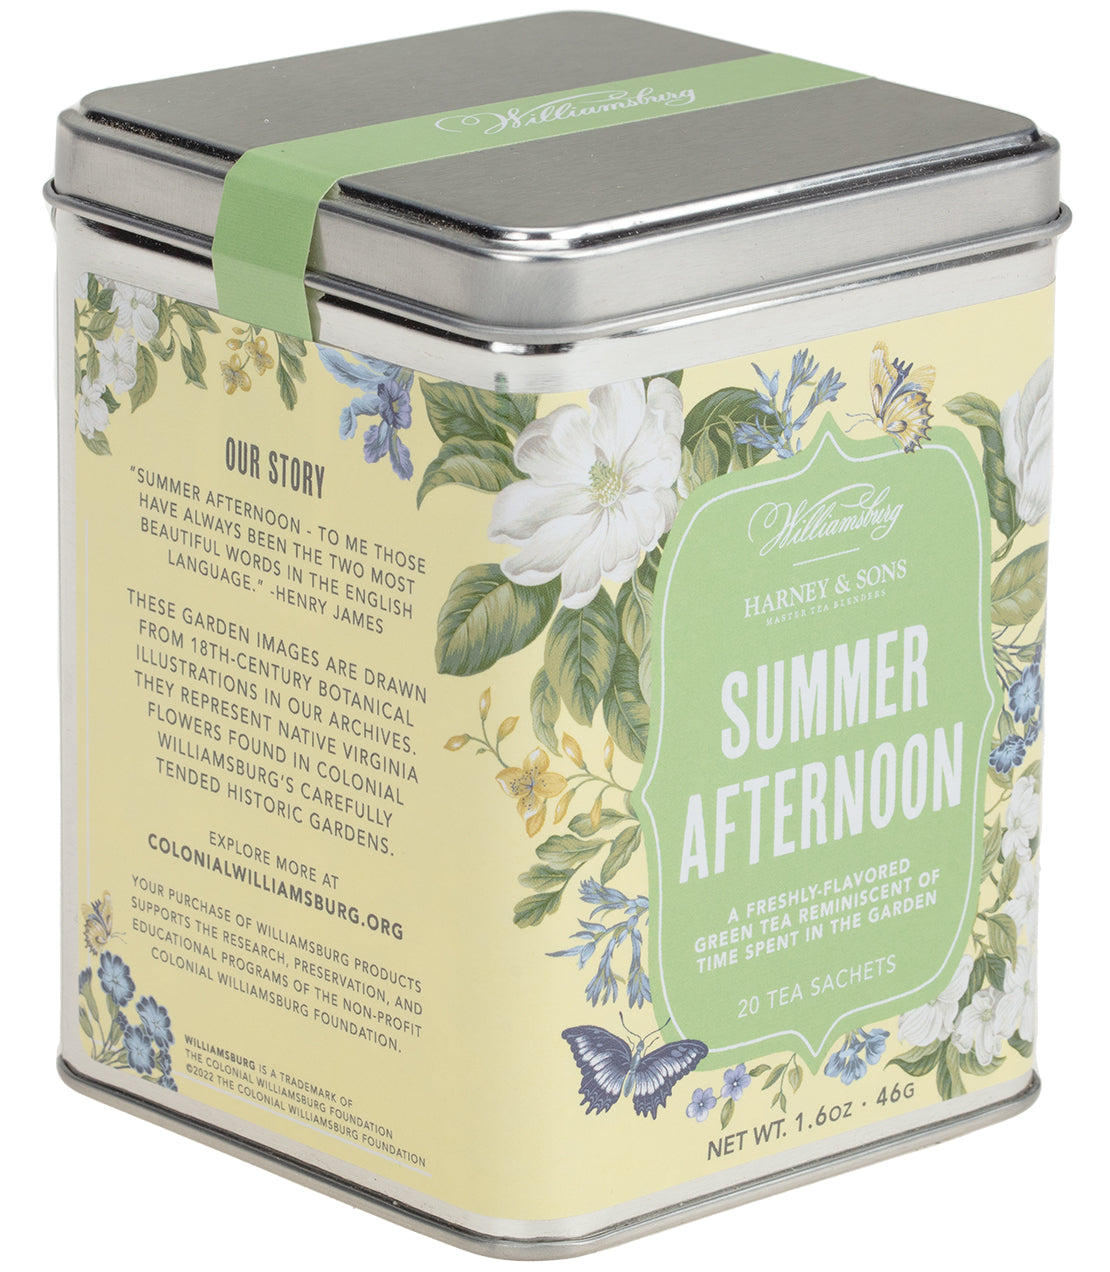 Williamsburg Summer Afternoon Tea, Tin of 20 Sachets - Sachets Tin of 20 Sachets - Harney & Sons Fine Teas